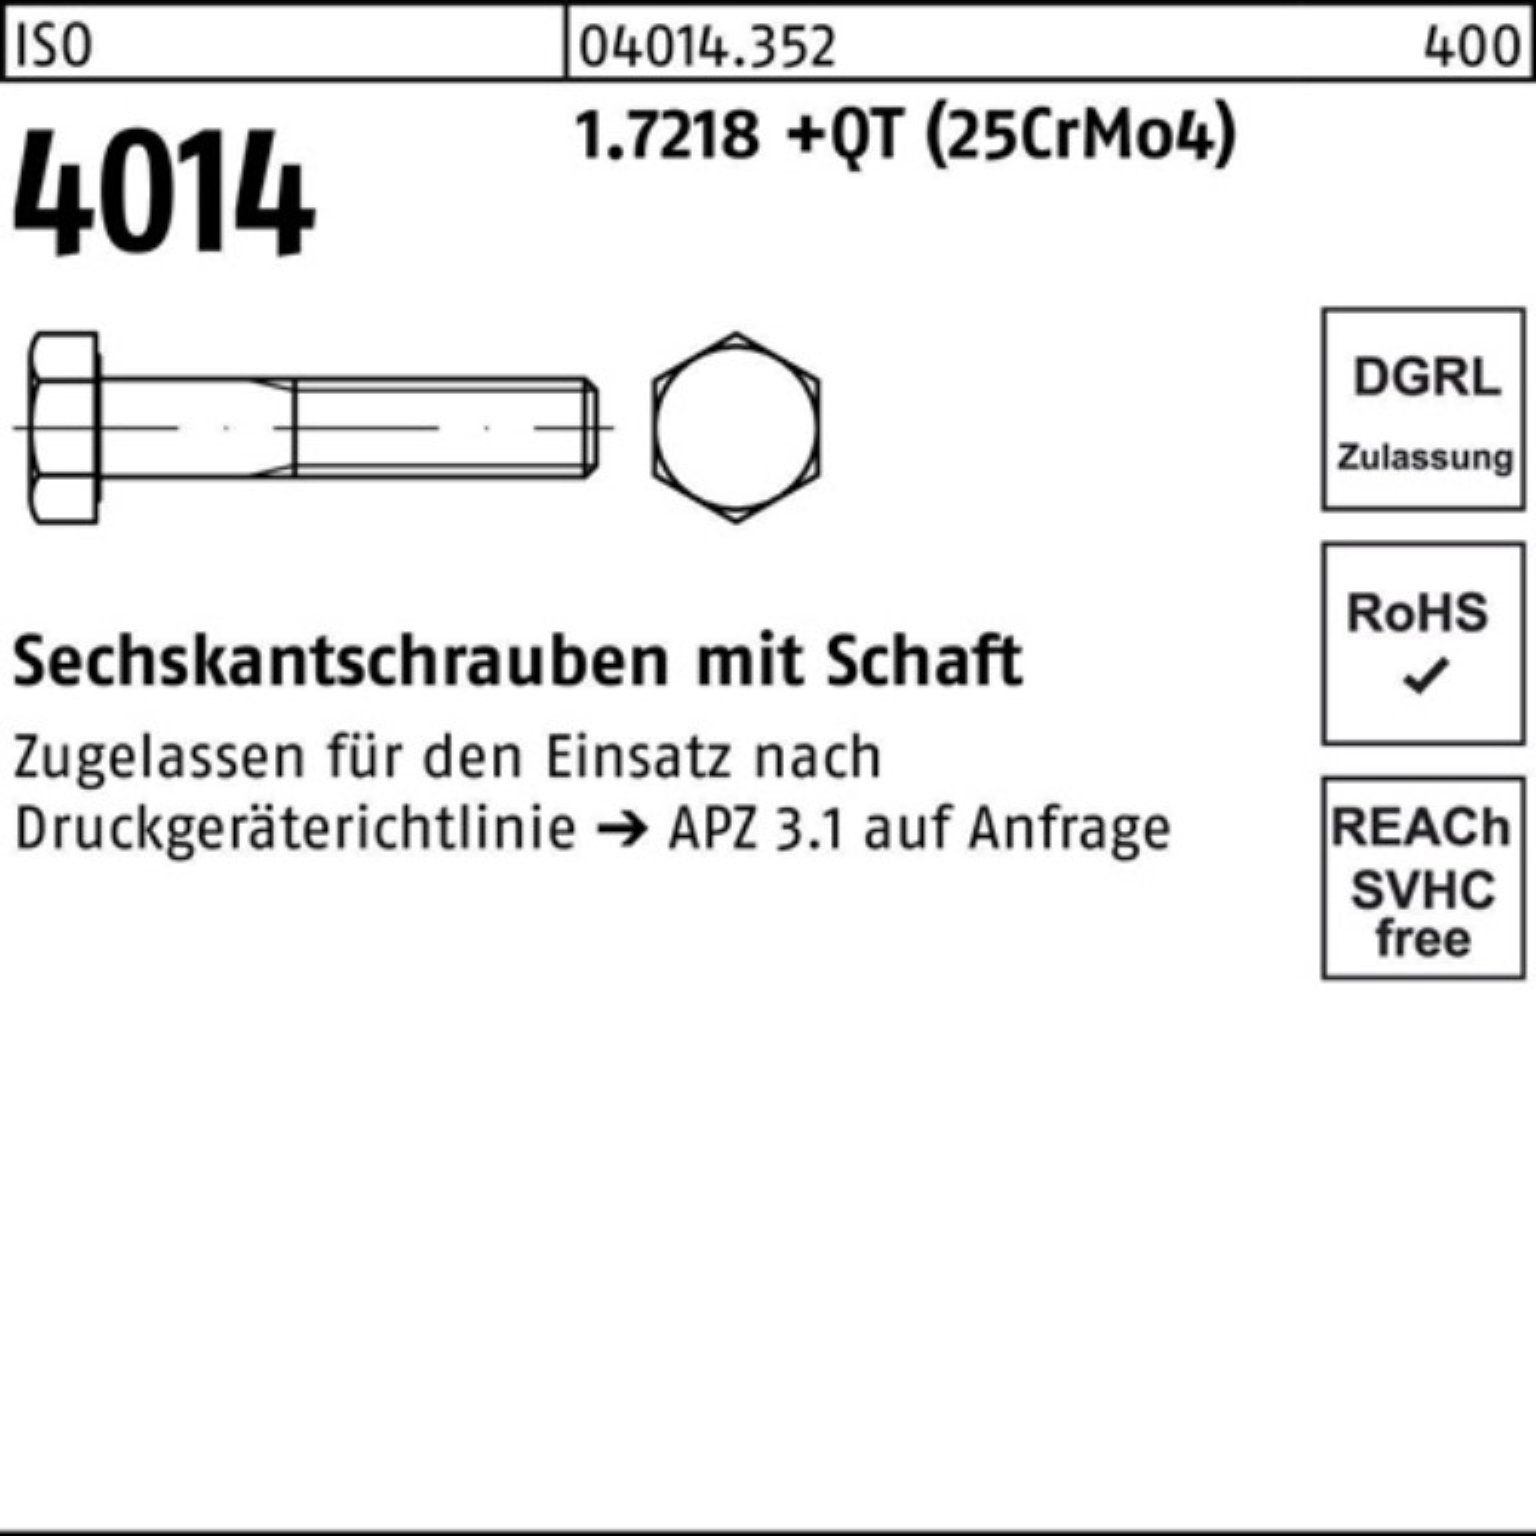 Sechskantschraube Pack 1.7218 4014 +QT M12x (25CrM Sechskantschraube ISO Bufab 100er Schaft 55